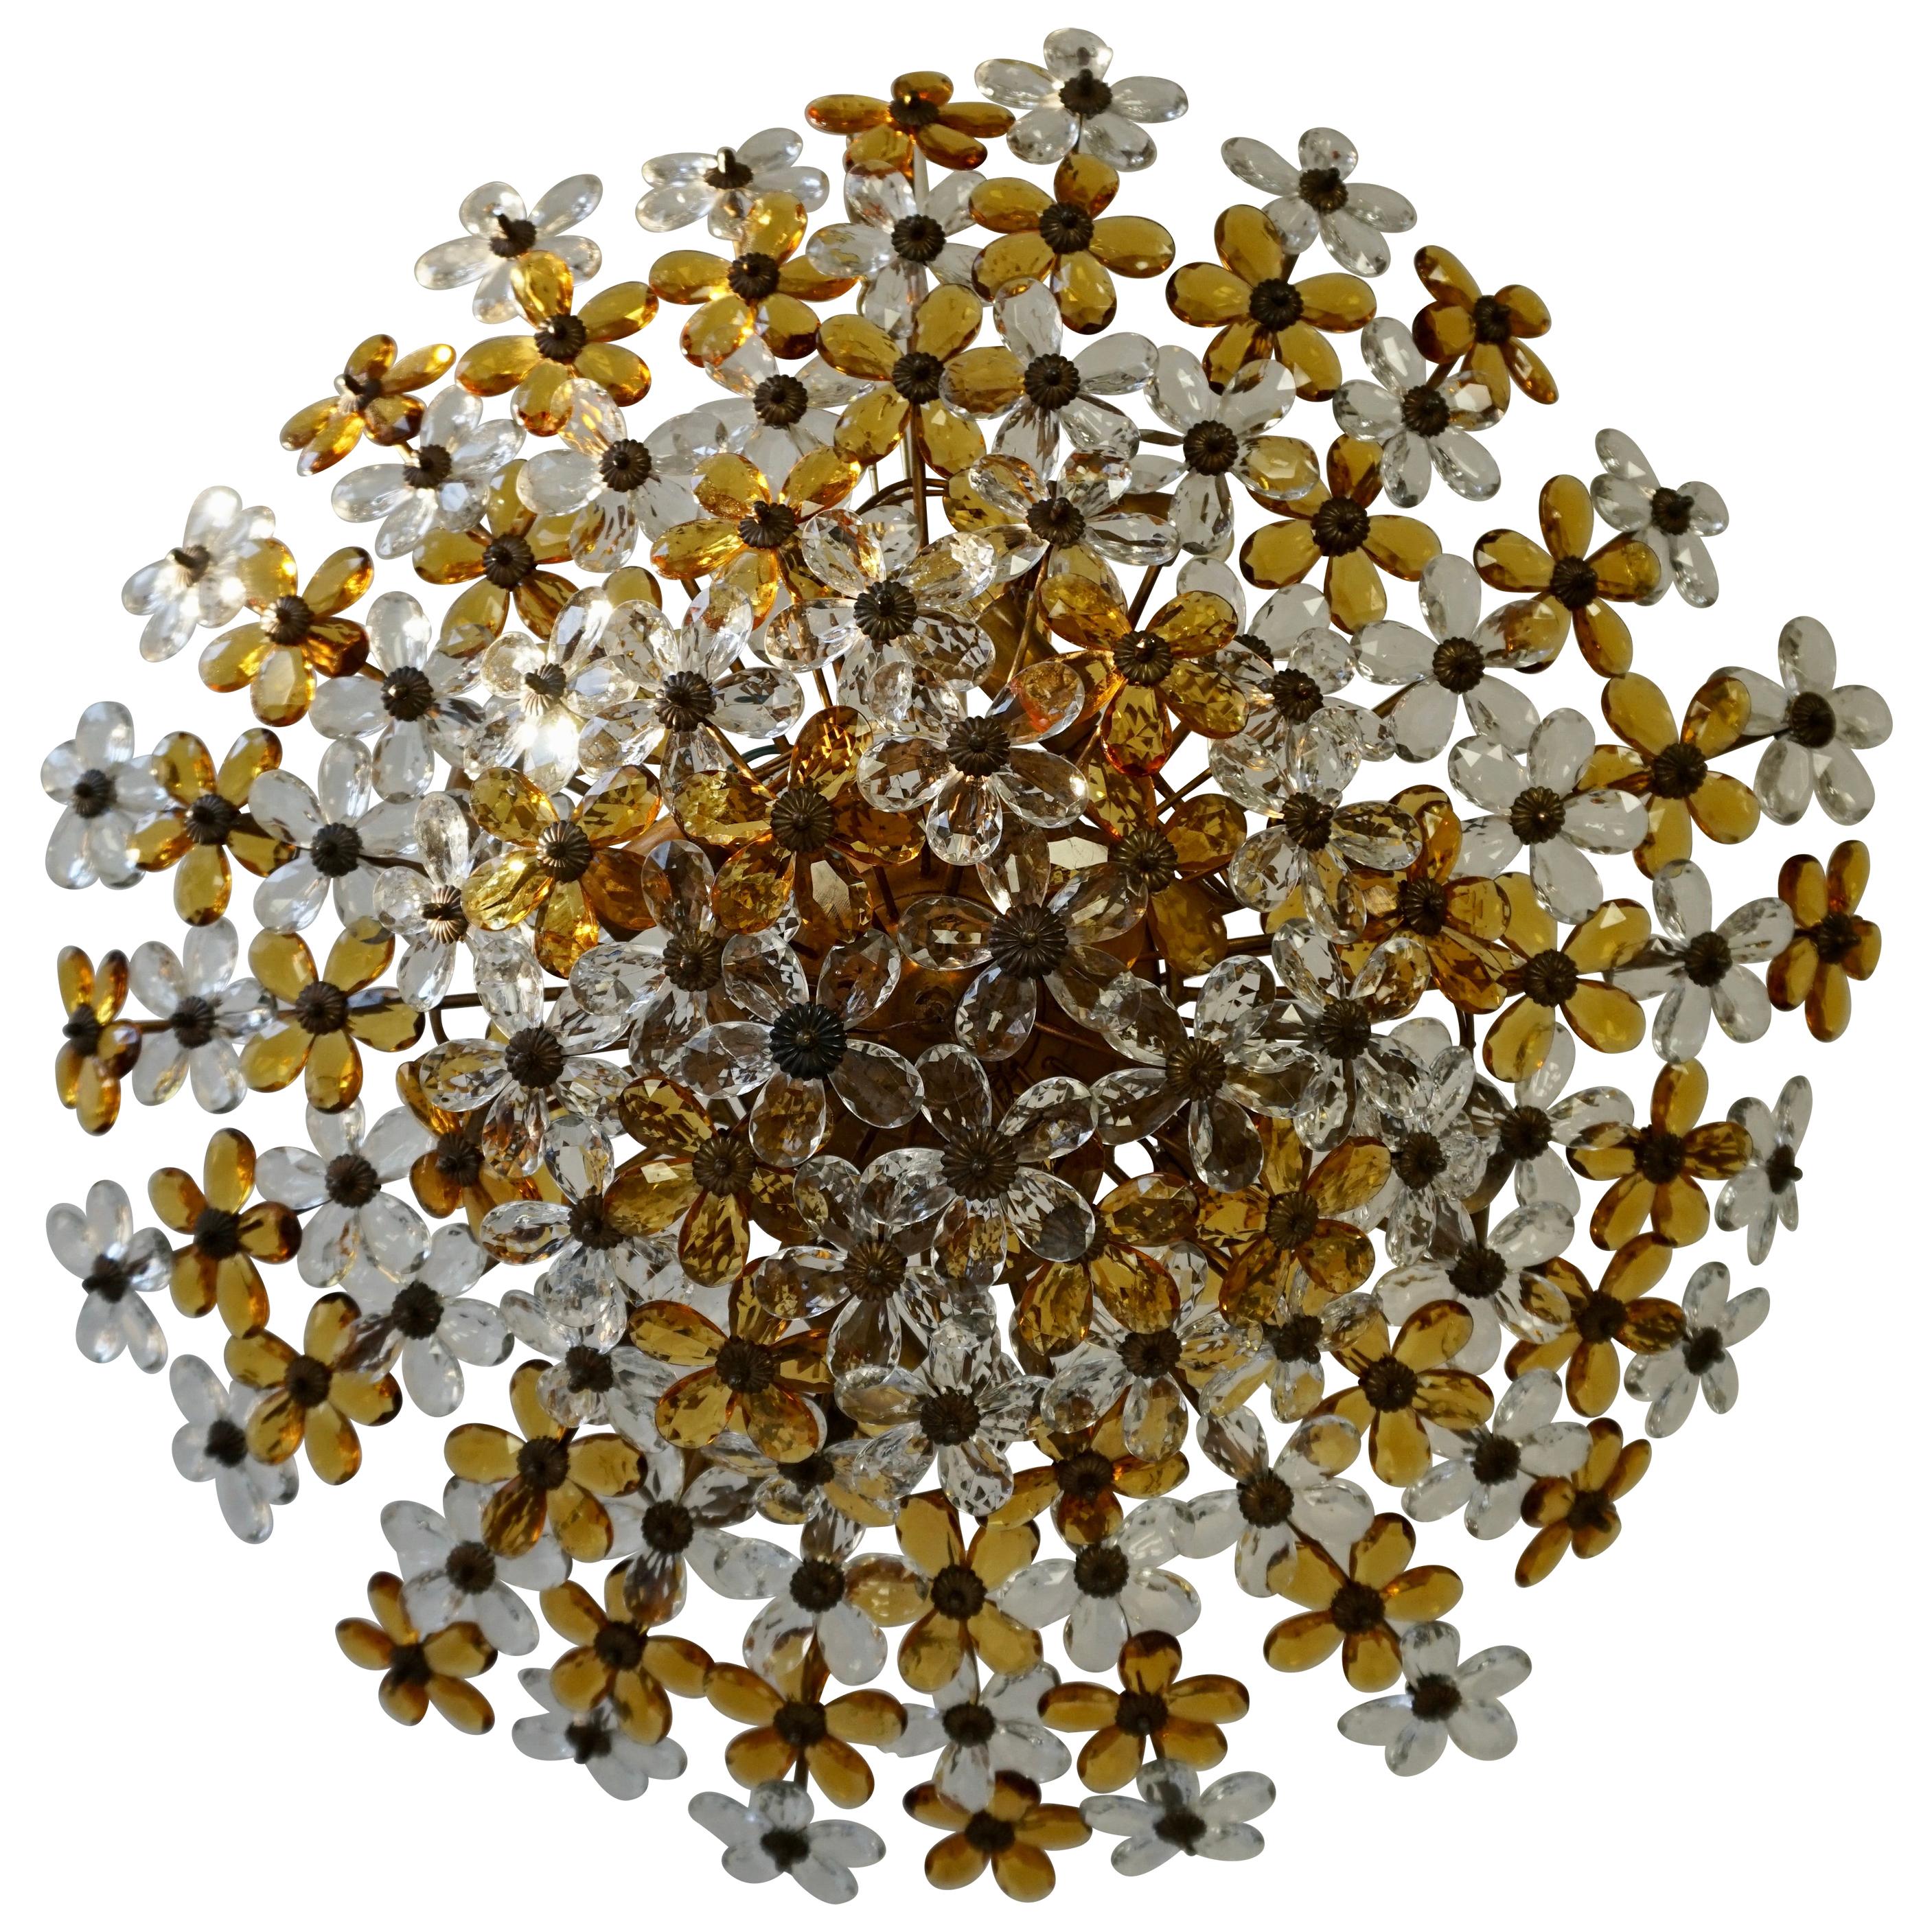 Großer runder vergoldeter Messing-Metall-Kristallglas-Kronleuchter mit Blumenmotiv, hergestellt in Italien, ca. 1960-1970, 
Die prächtige Deckenleuchte ist mit vielen schönen, handgeschliffenen, facettierten Kristallen in Form von Blumen bestückt,